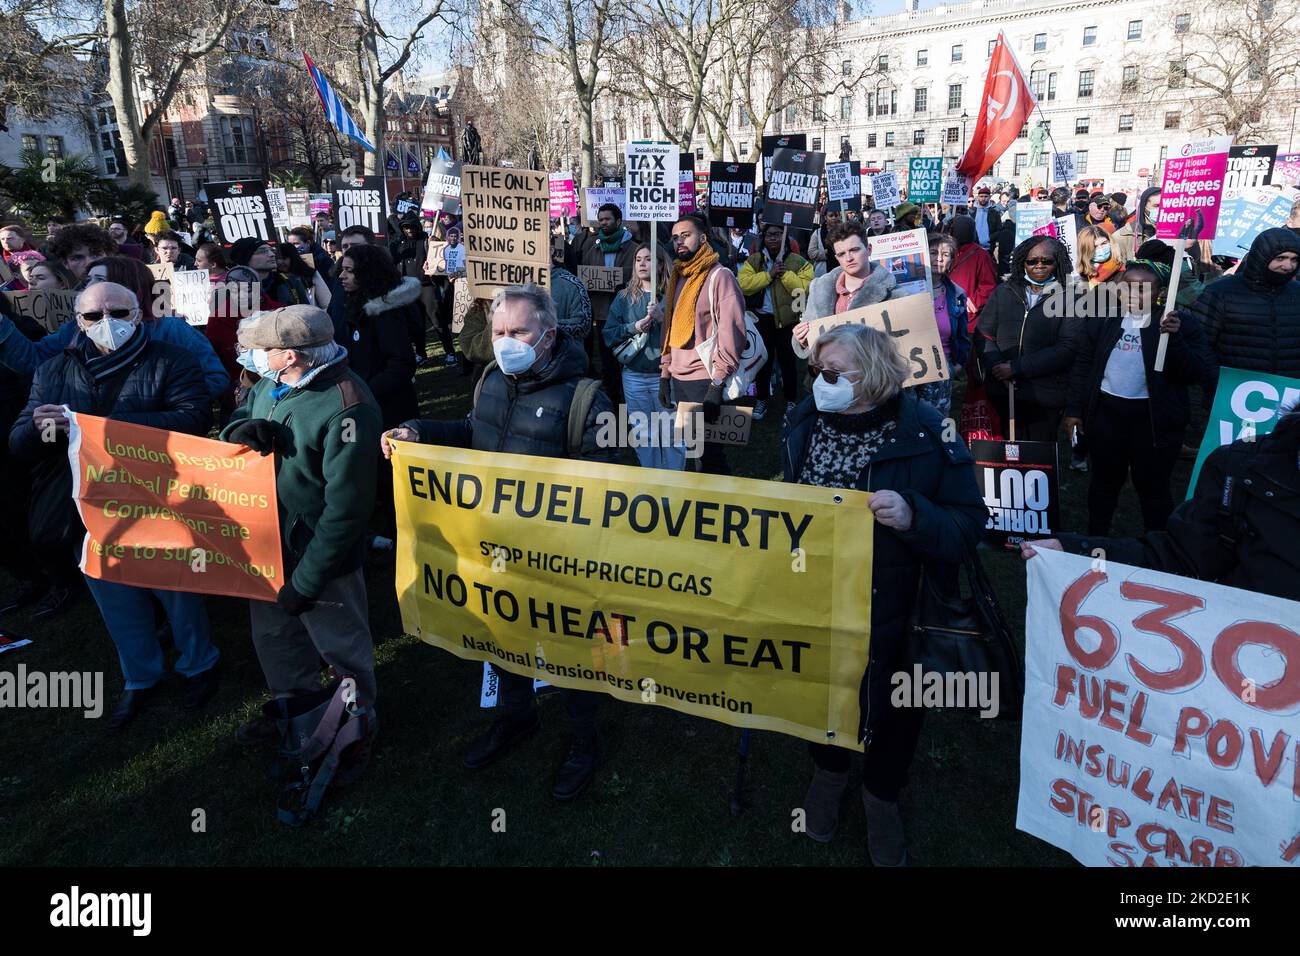 LONDRA, REGNO UNITO - 12 FEBBRAIO 2022: I manifestanti protestano in Parliament Square contro l'aumento dei costi energetici delle famiglie, l'aumento dei prezzi trainato dall'inflazione e l'aumento del contributo delle assicurazioni sociali in mezzo a salari stagnanti che chiedono al governo di agire per affrontare il costo della crisi vivente il 12 febbraio 2022 a Londra, Inghilterra. Da aprile, le famiglie di tutto il Regno Unito dovranno affrontare una stretta significativa sui loro bilanci, in quanto il tetto massimo dei prezzi dell'energia aumenterà del 54% a causa della crisi globale del carburante e dell'energia e il contributo nazionale dell'Insurace aumenterà del 1,25%, combinato con alti tassi di informazione Foto Stock